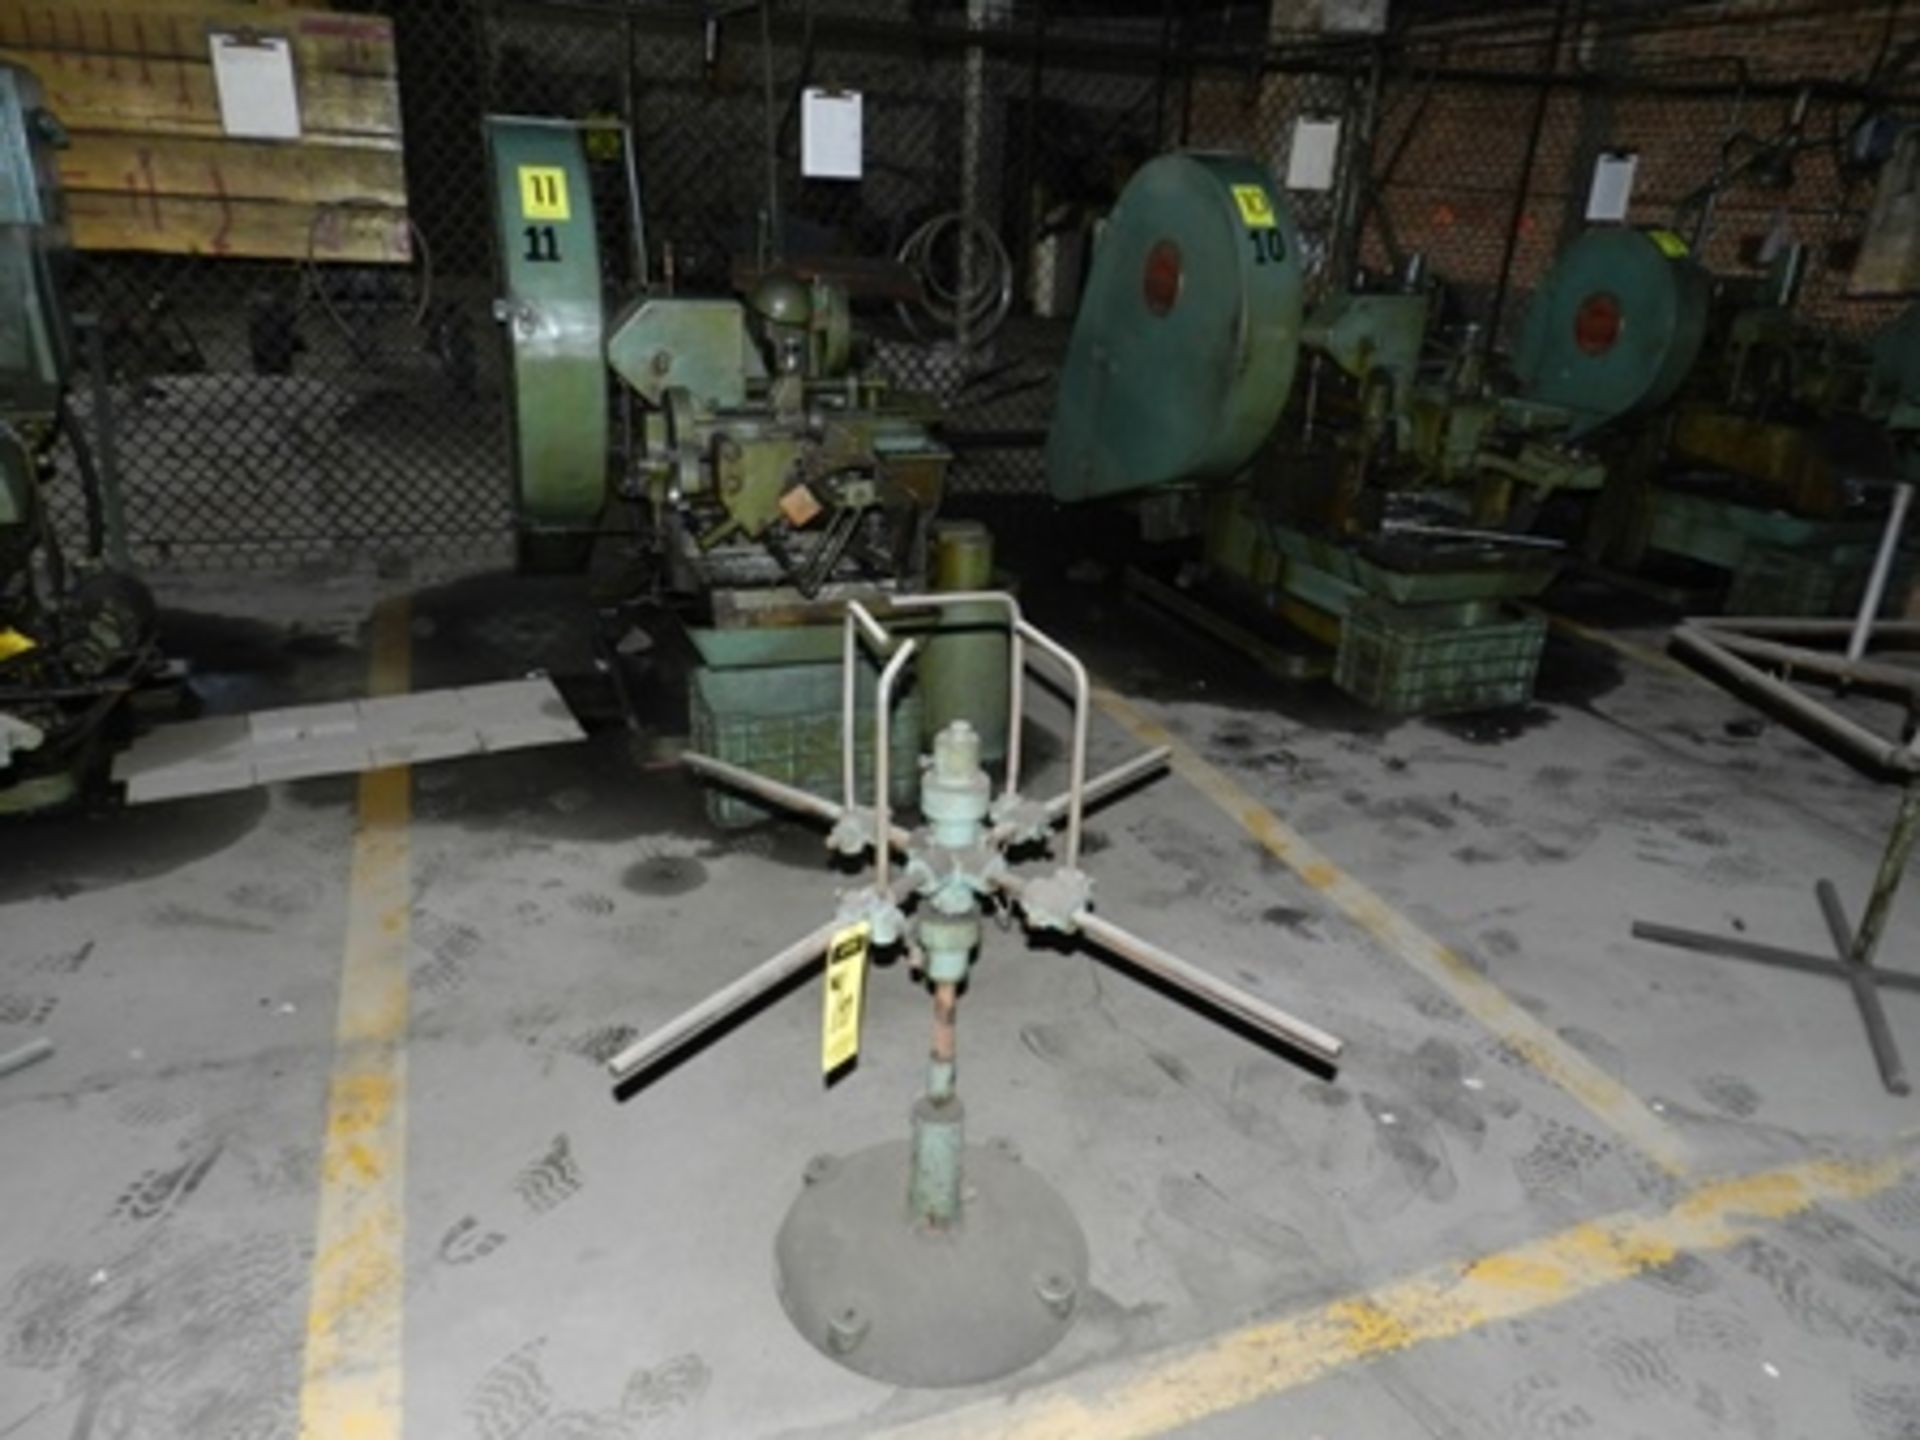 Máquina forjadora de remaches 3/16" marca Waterbury Farrel serie 27159513 con cabezadora en frio - Image 5 of 20